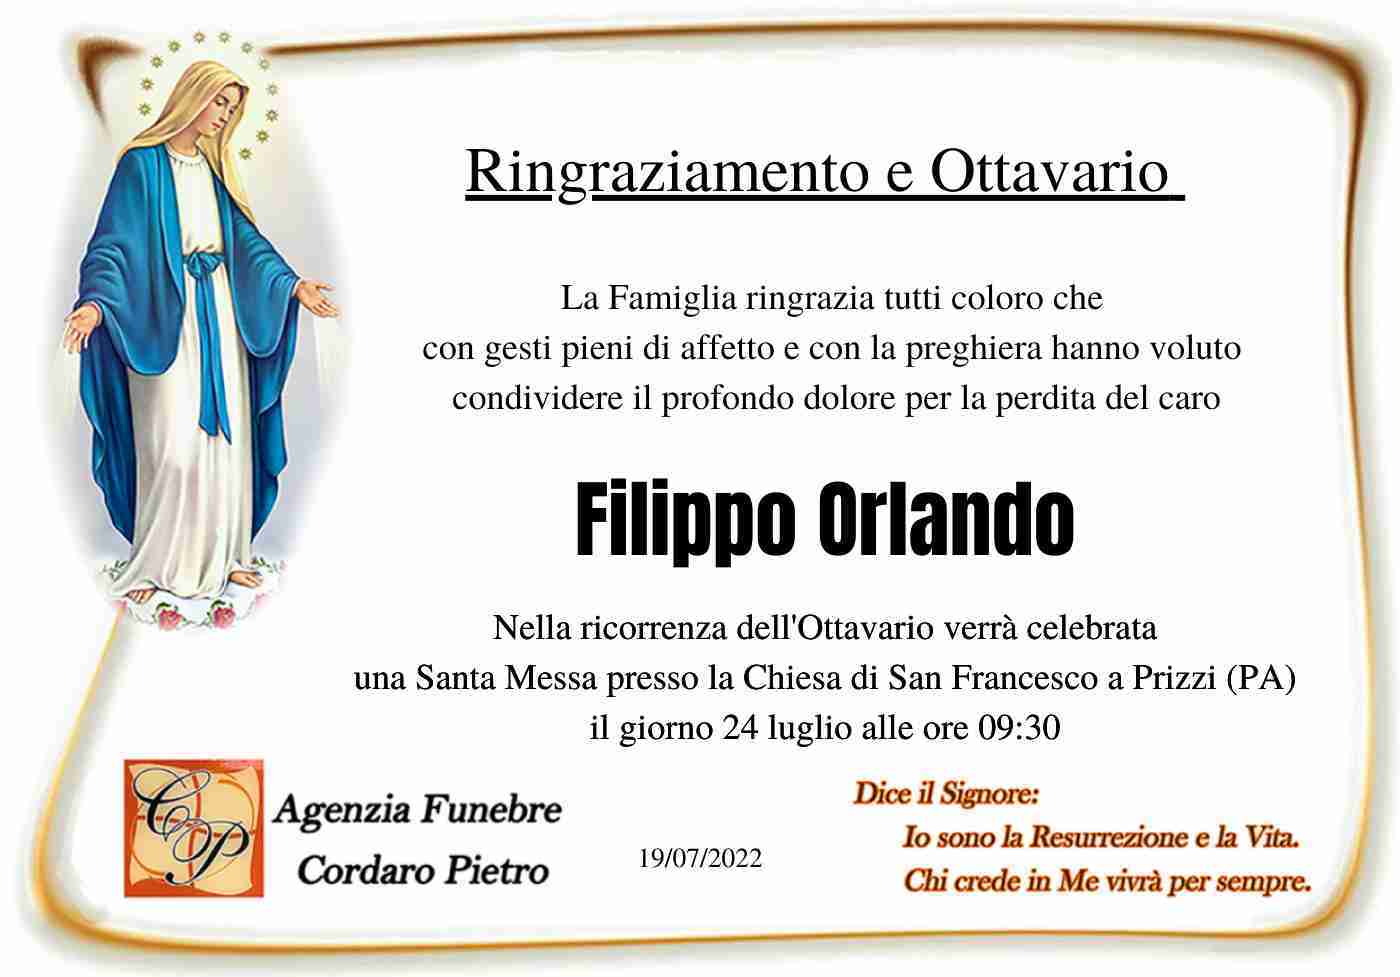 Filippo Orlando